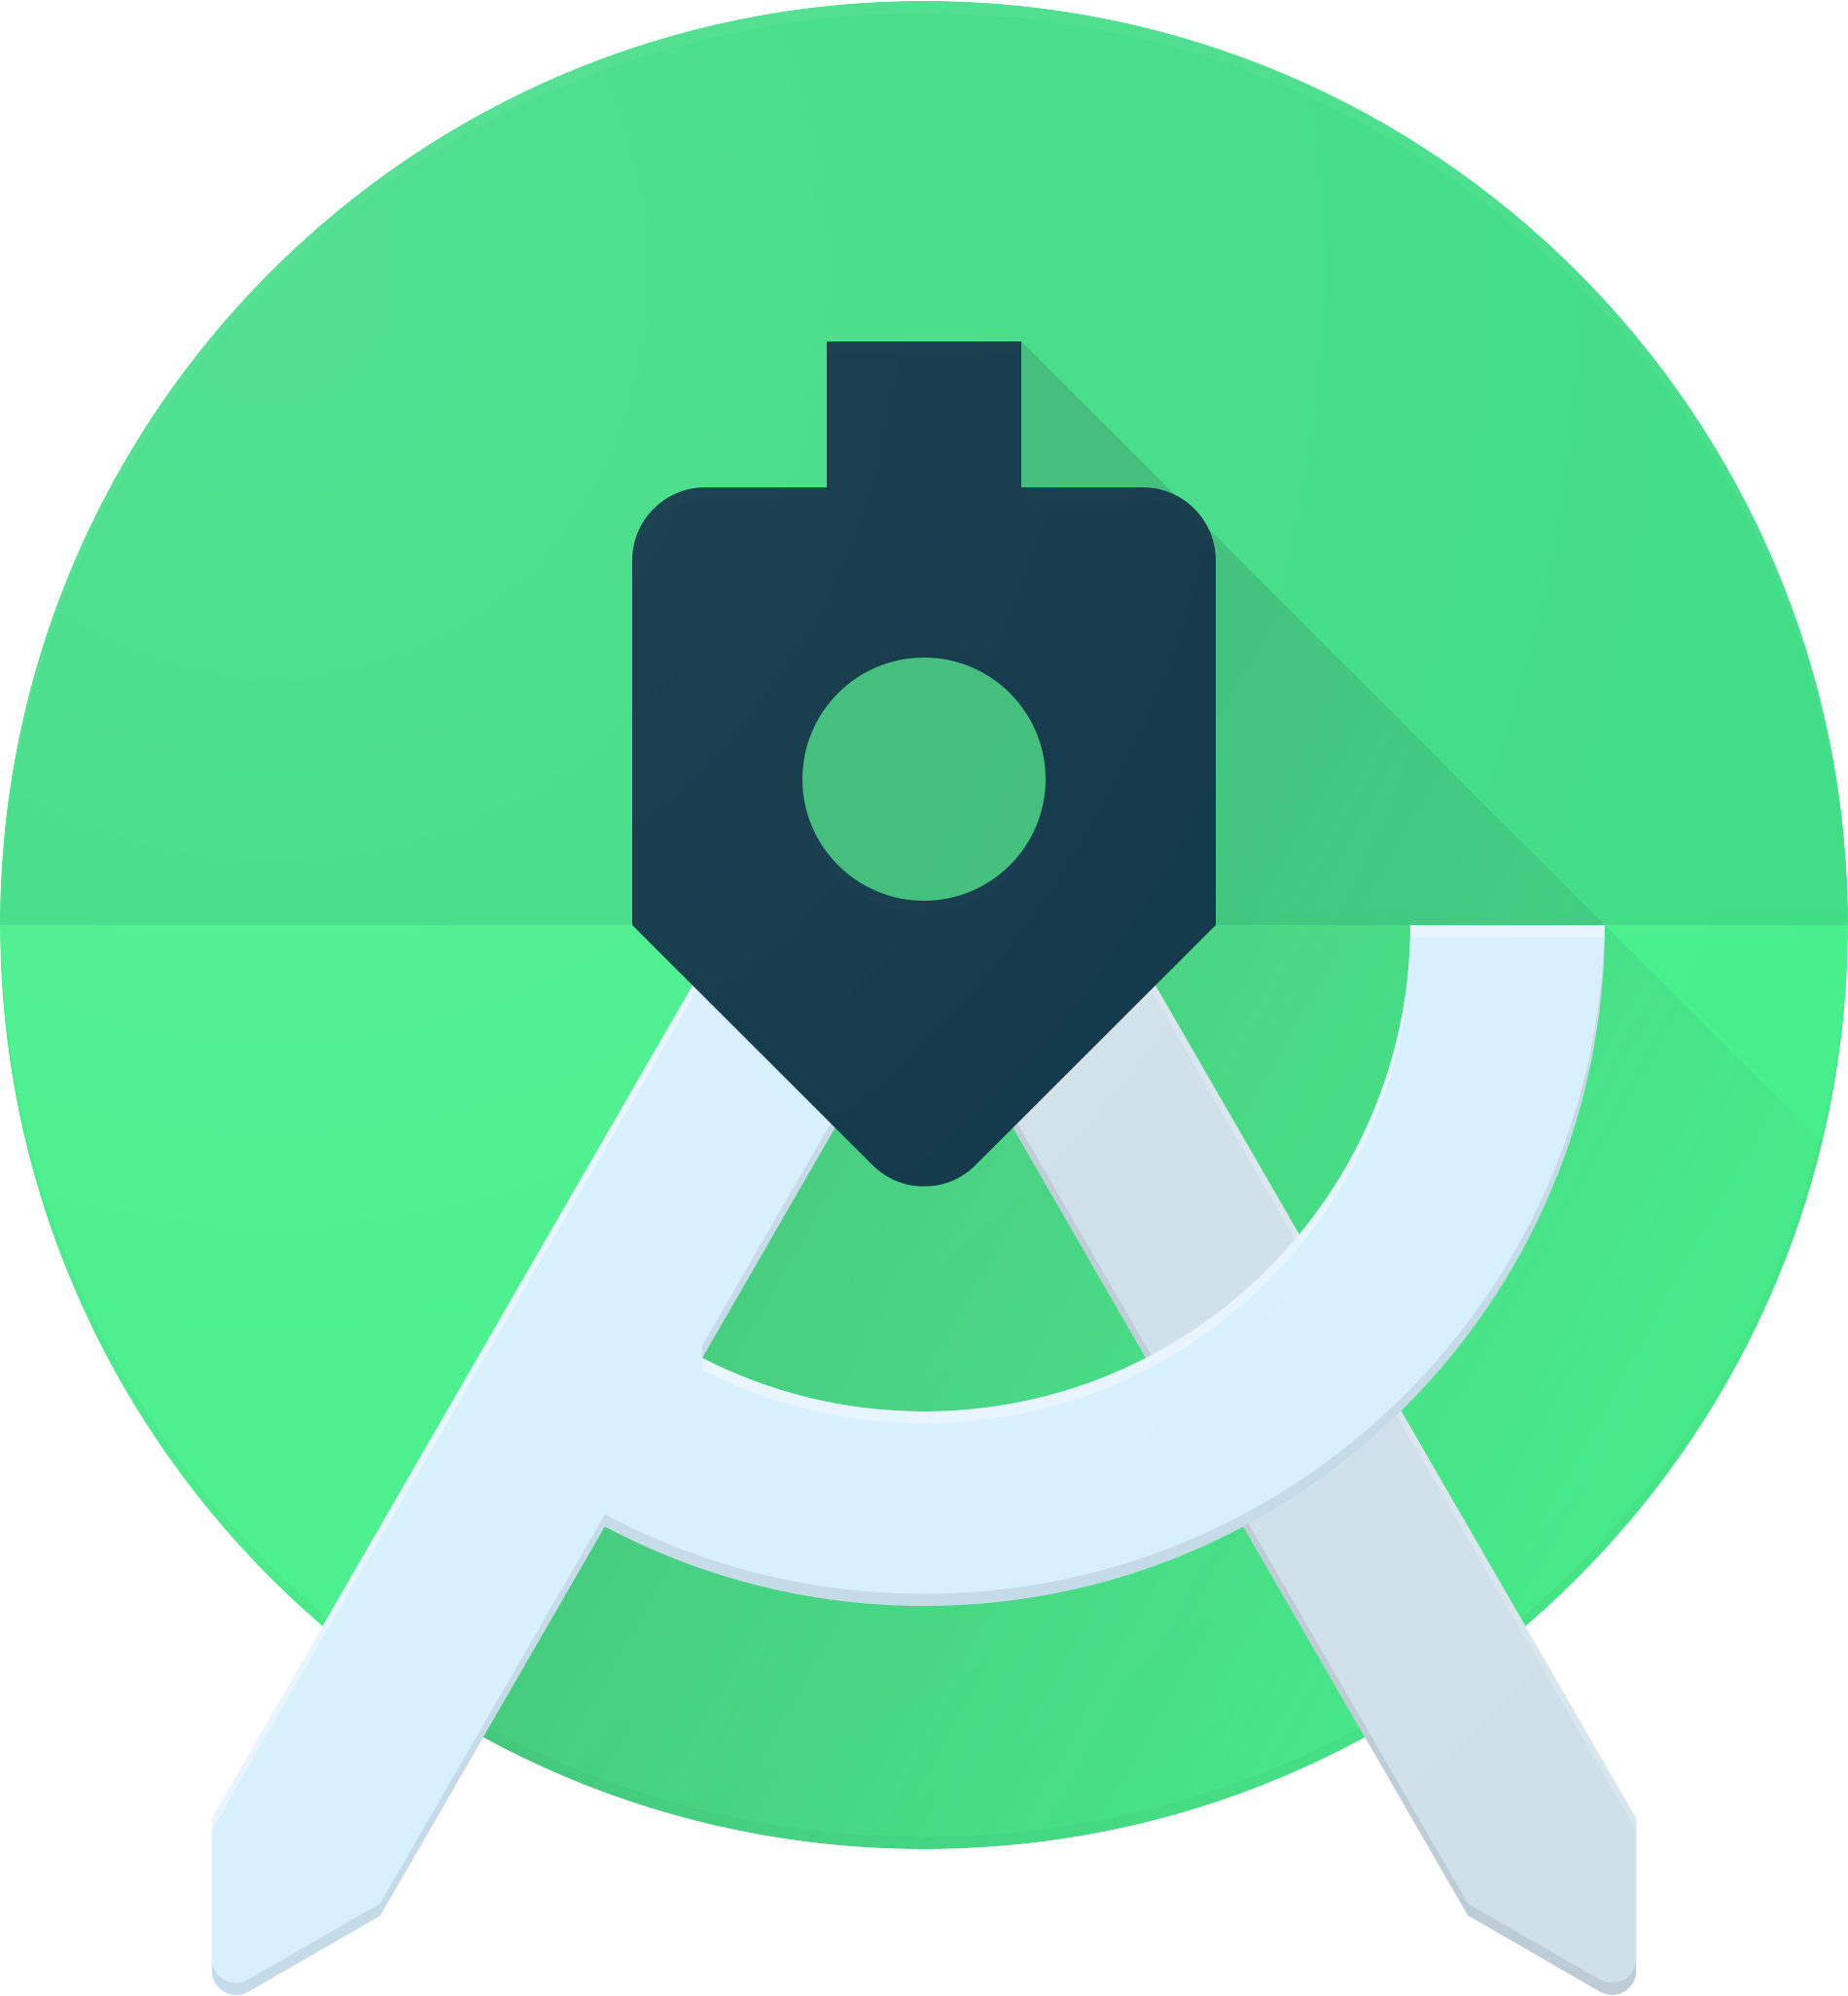 Android-Studio-Logo